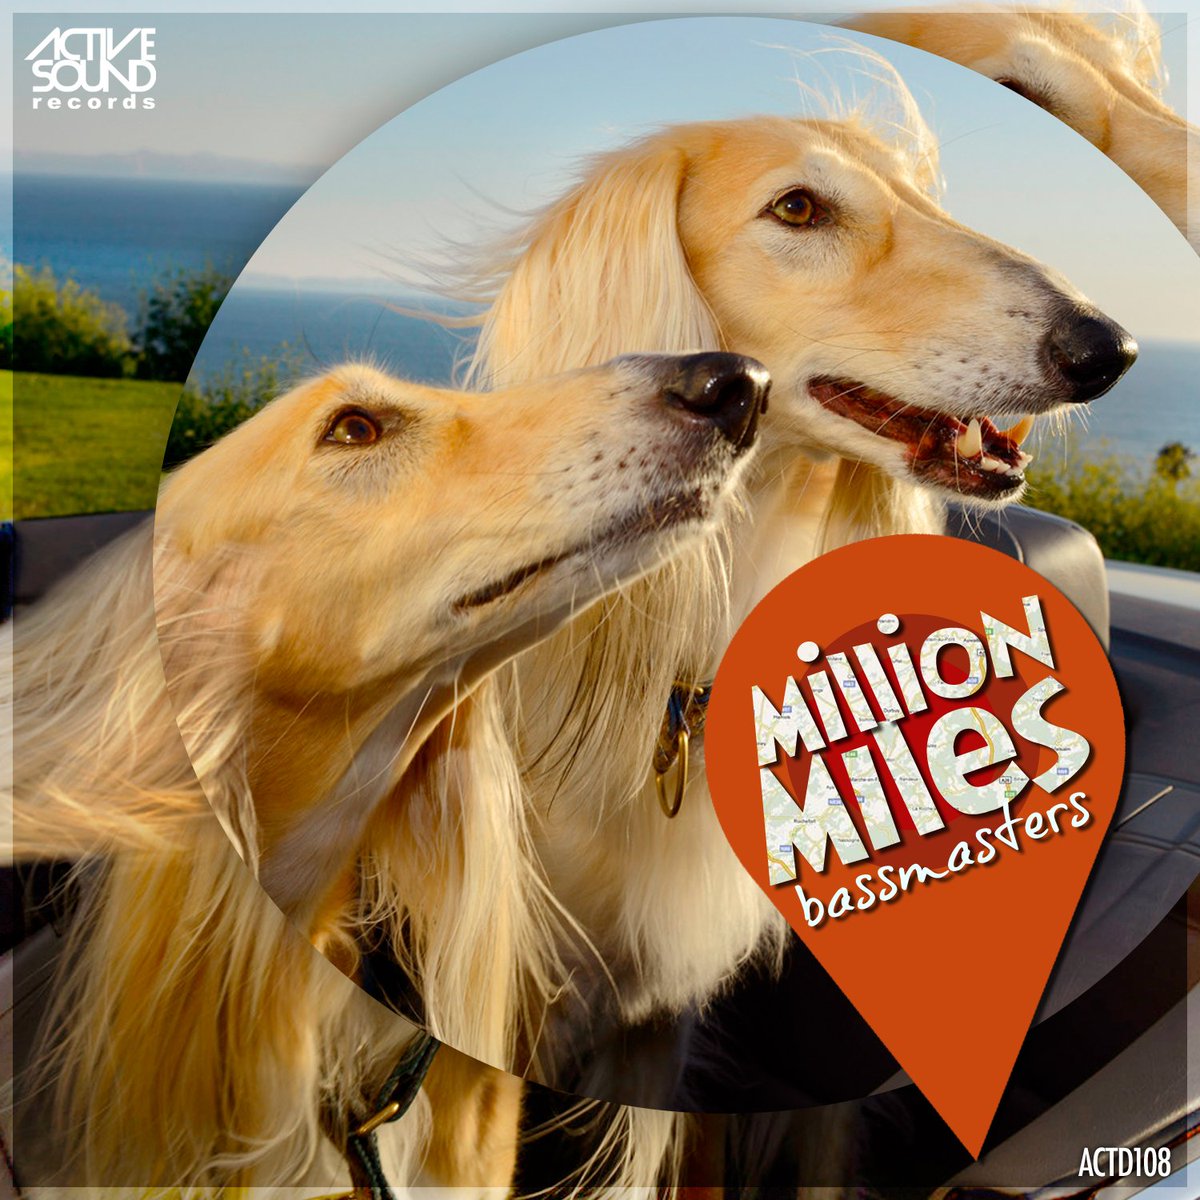 Bassmasters - Million Miles